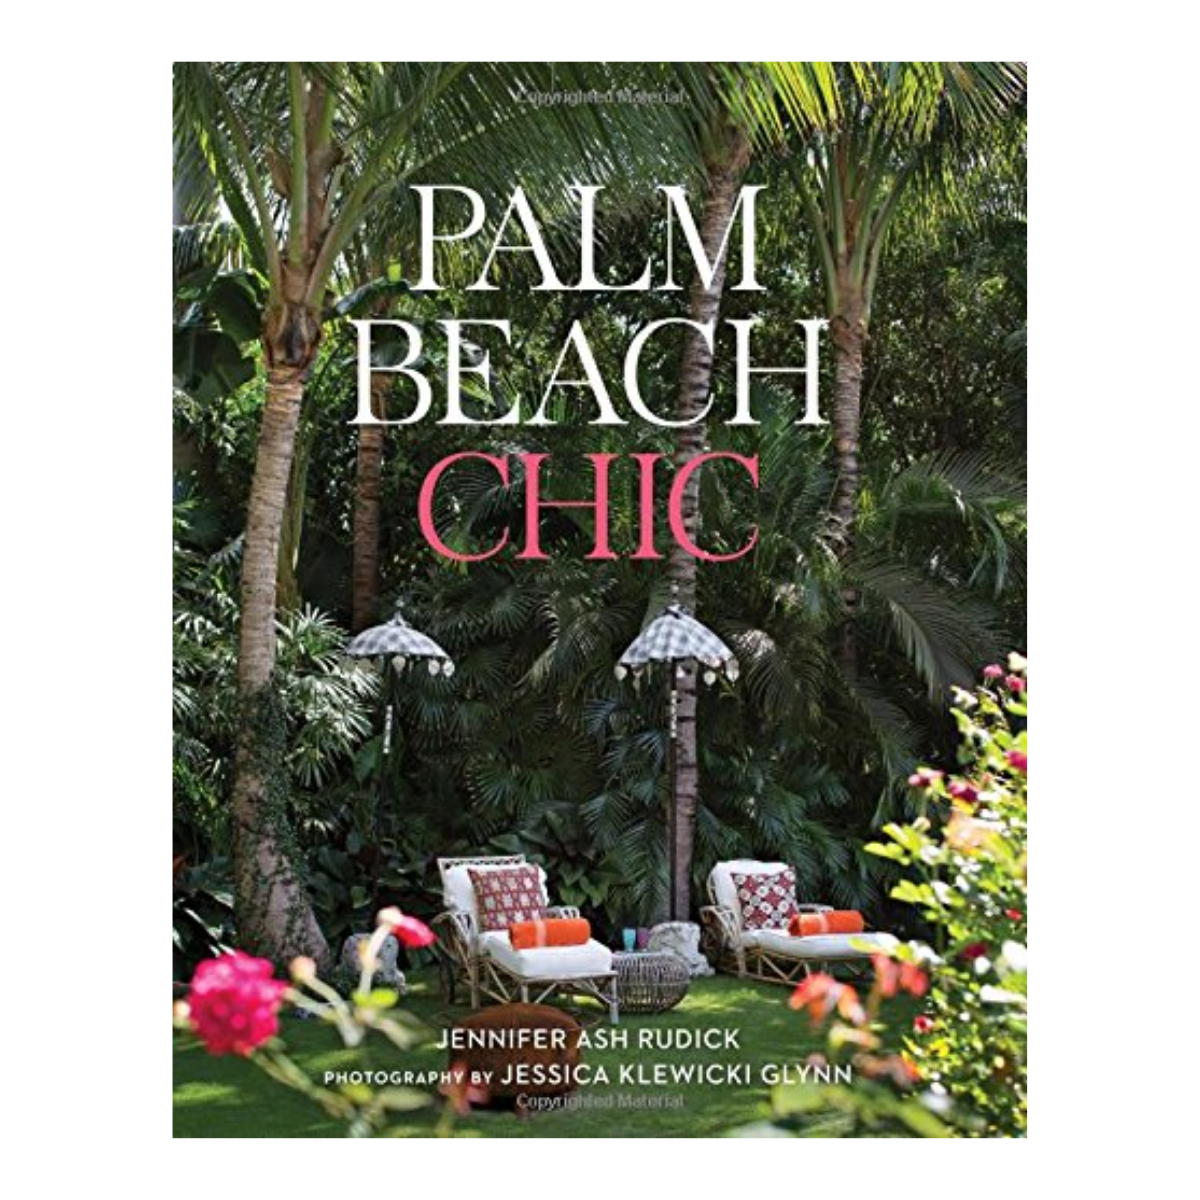 "Palm Beach Chic"